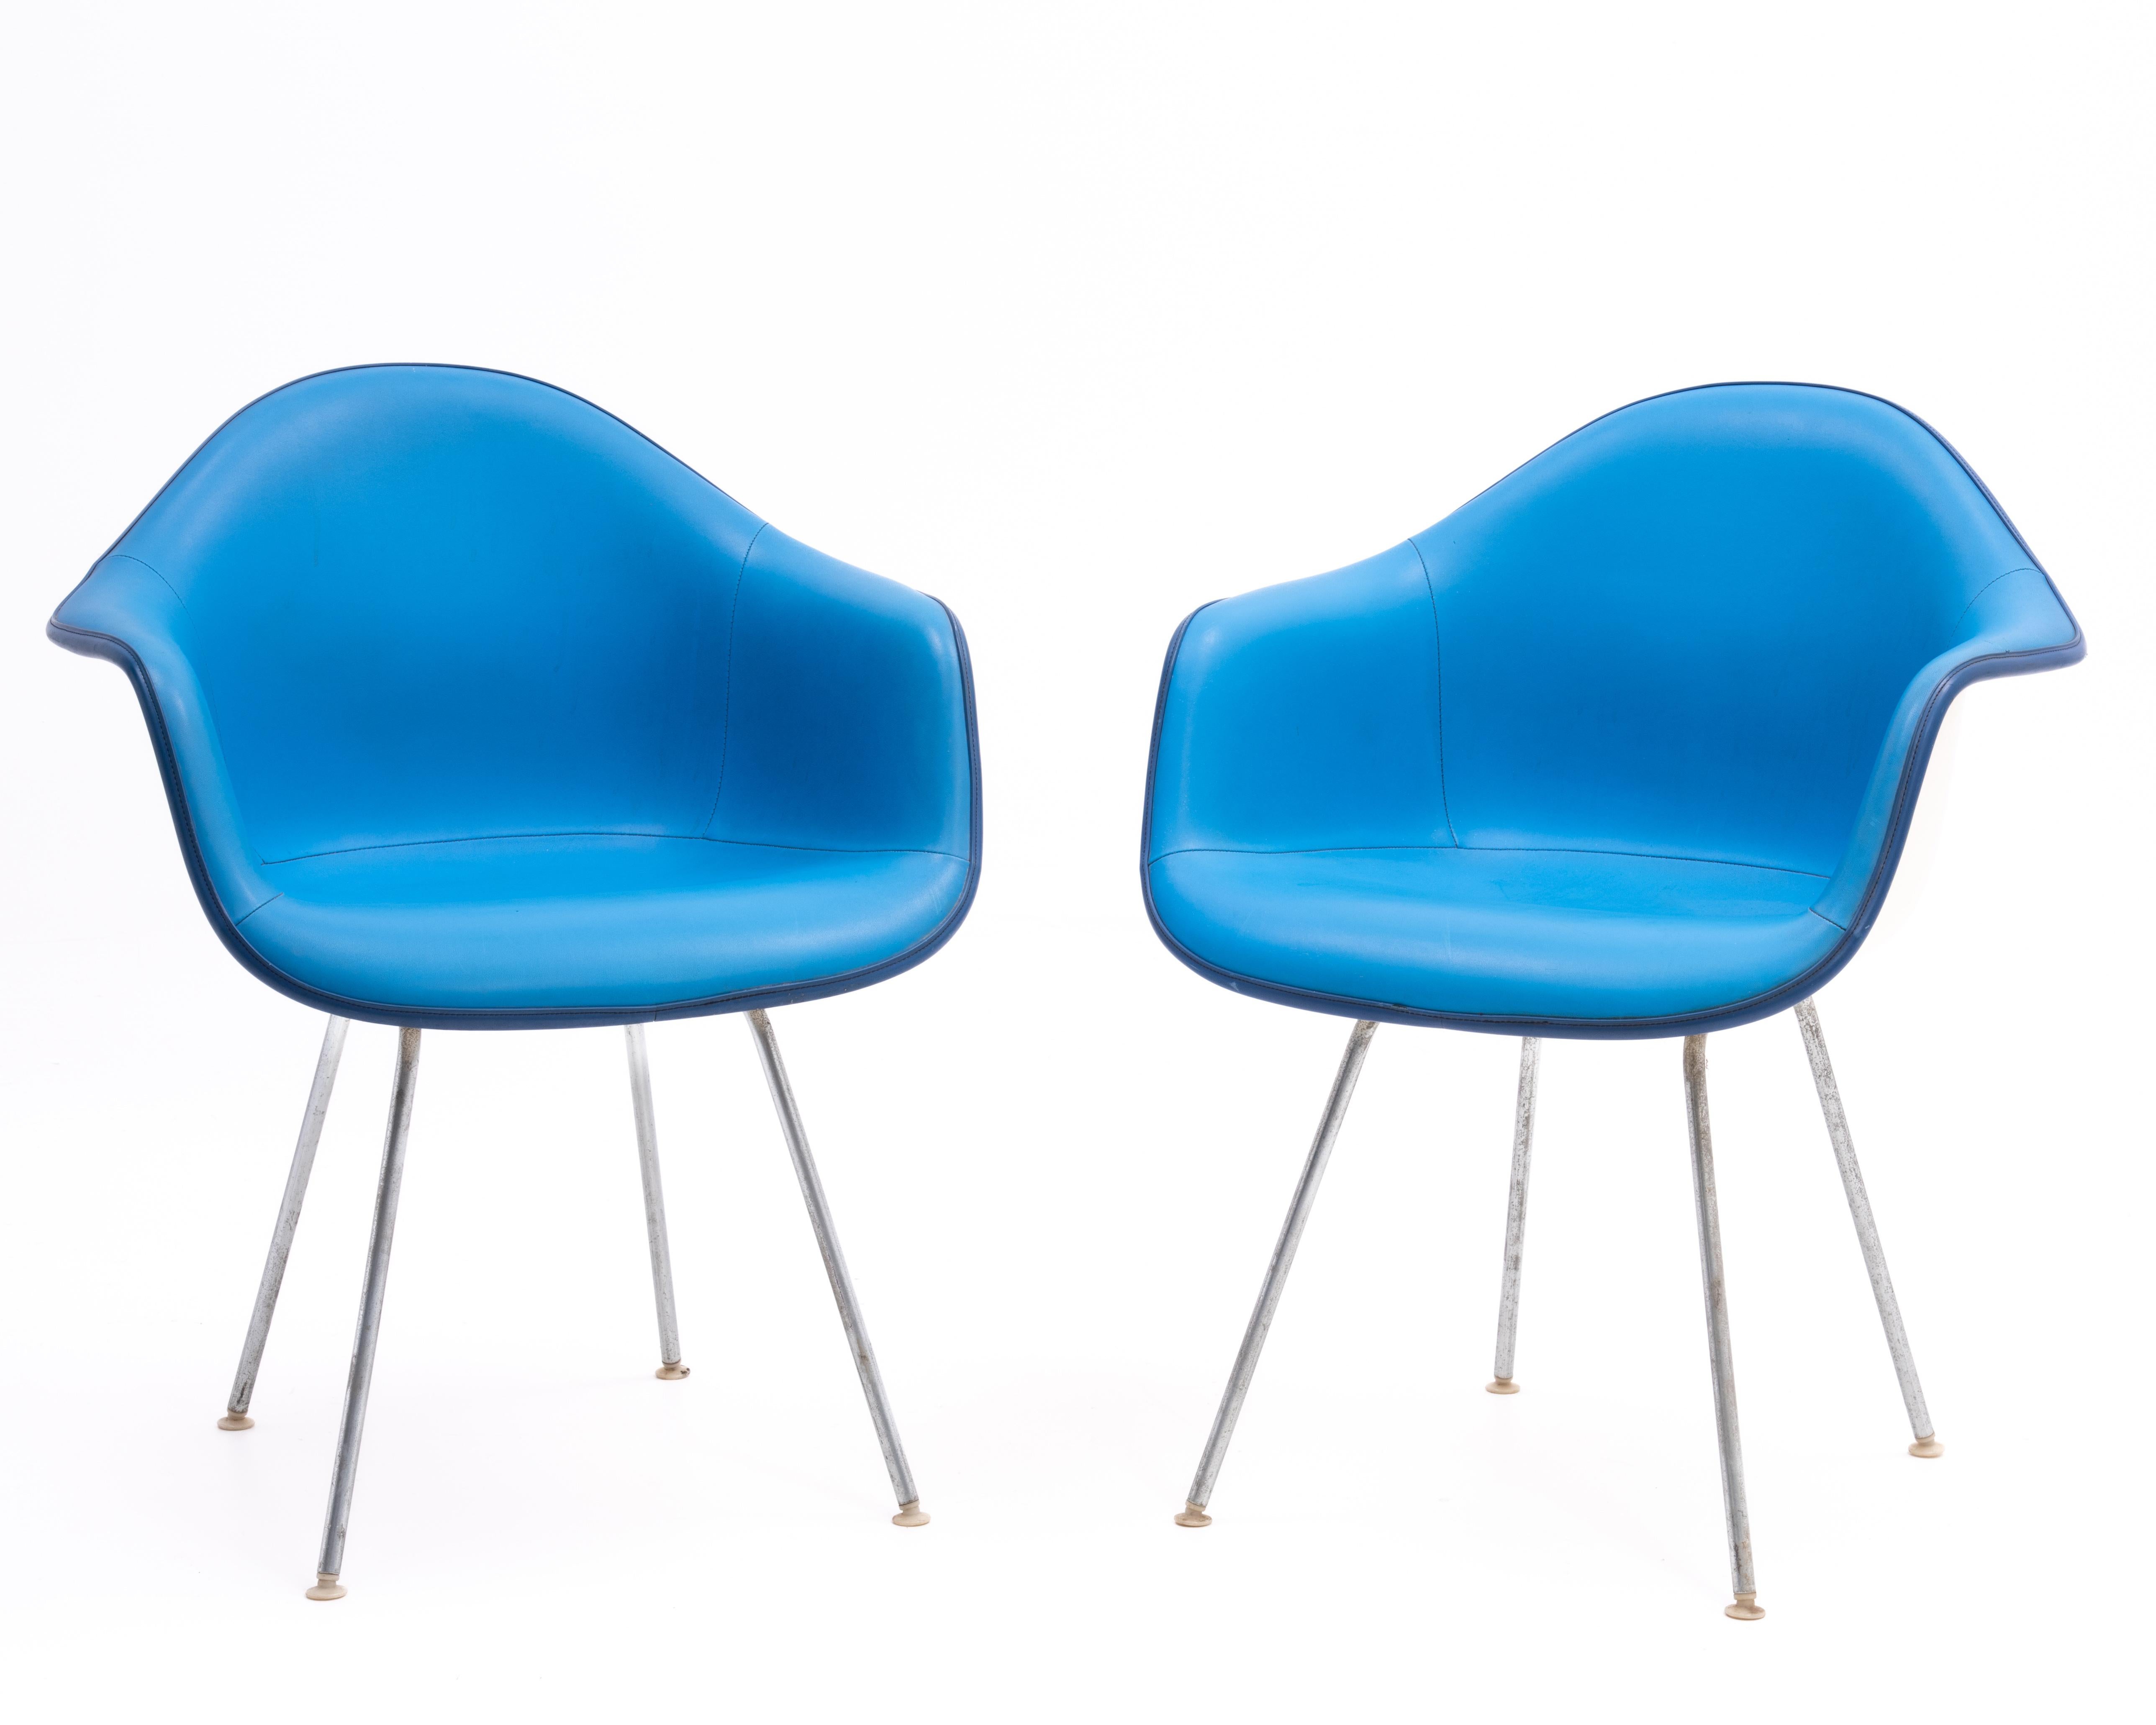 Paire de chaises à accoudoirs en fibre de verre conçues par Ray & Charles Eames et produites par Herman Miller en 1972. Les coques blanches contrastent joliment avec les sièges bleu céruléen et les passepoils bleu roi. La coque blanche et l'assise